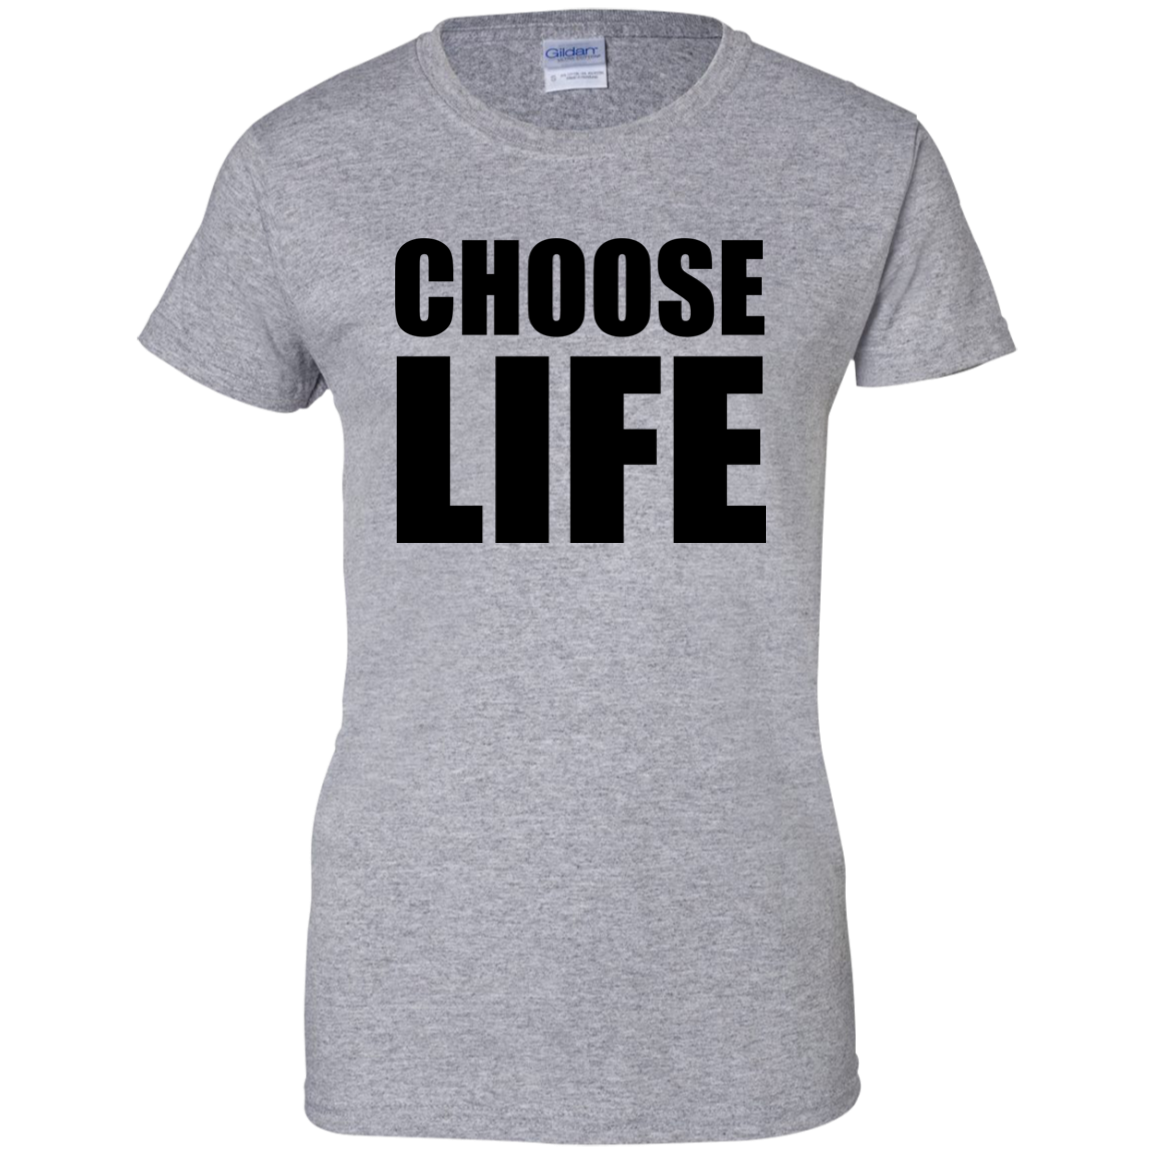 You can choose life. Choose Life. Choose your Life. Постер choose Life. Choose Life t Shirt.